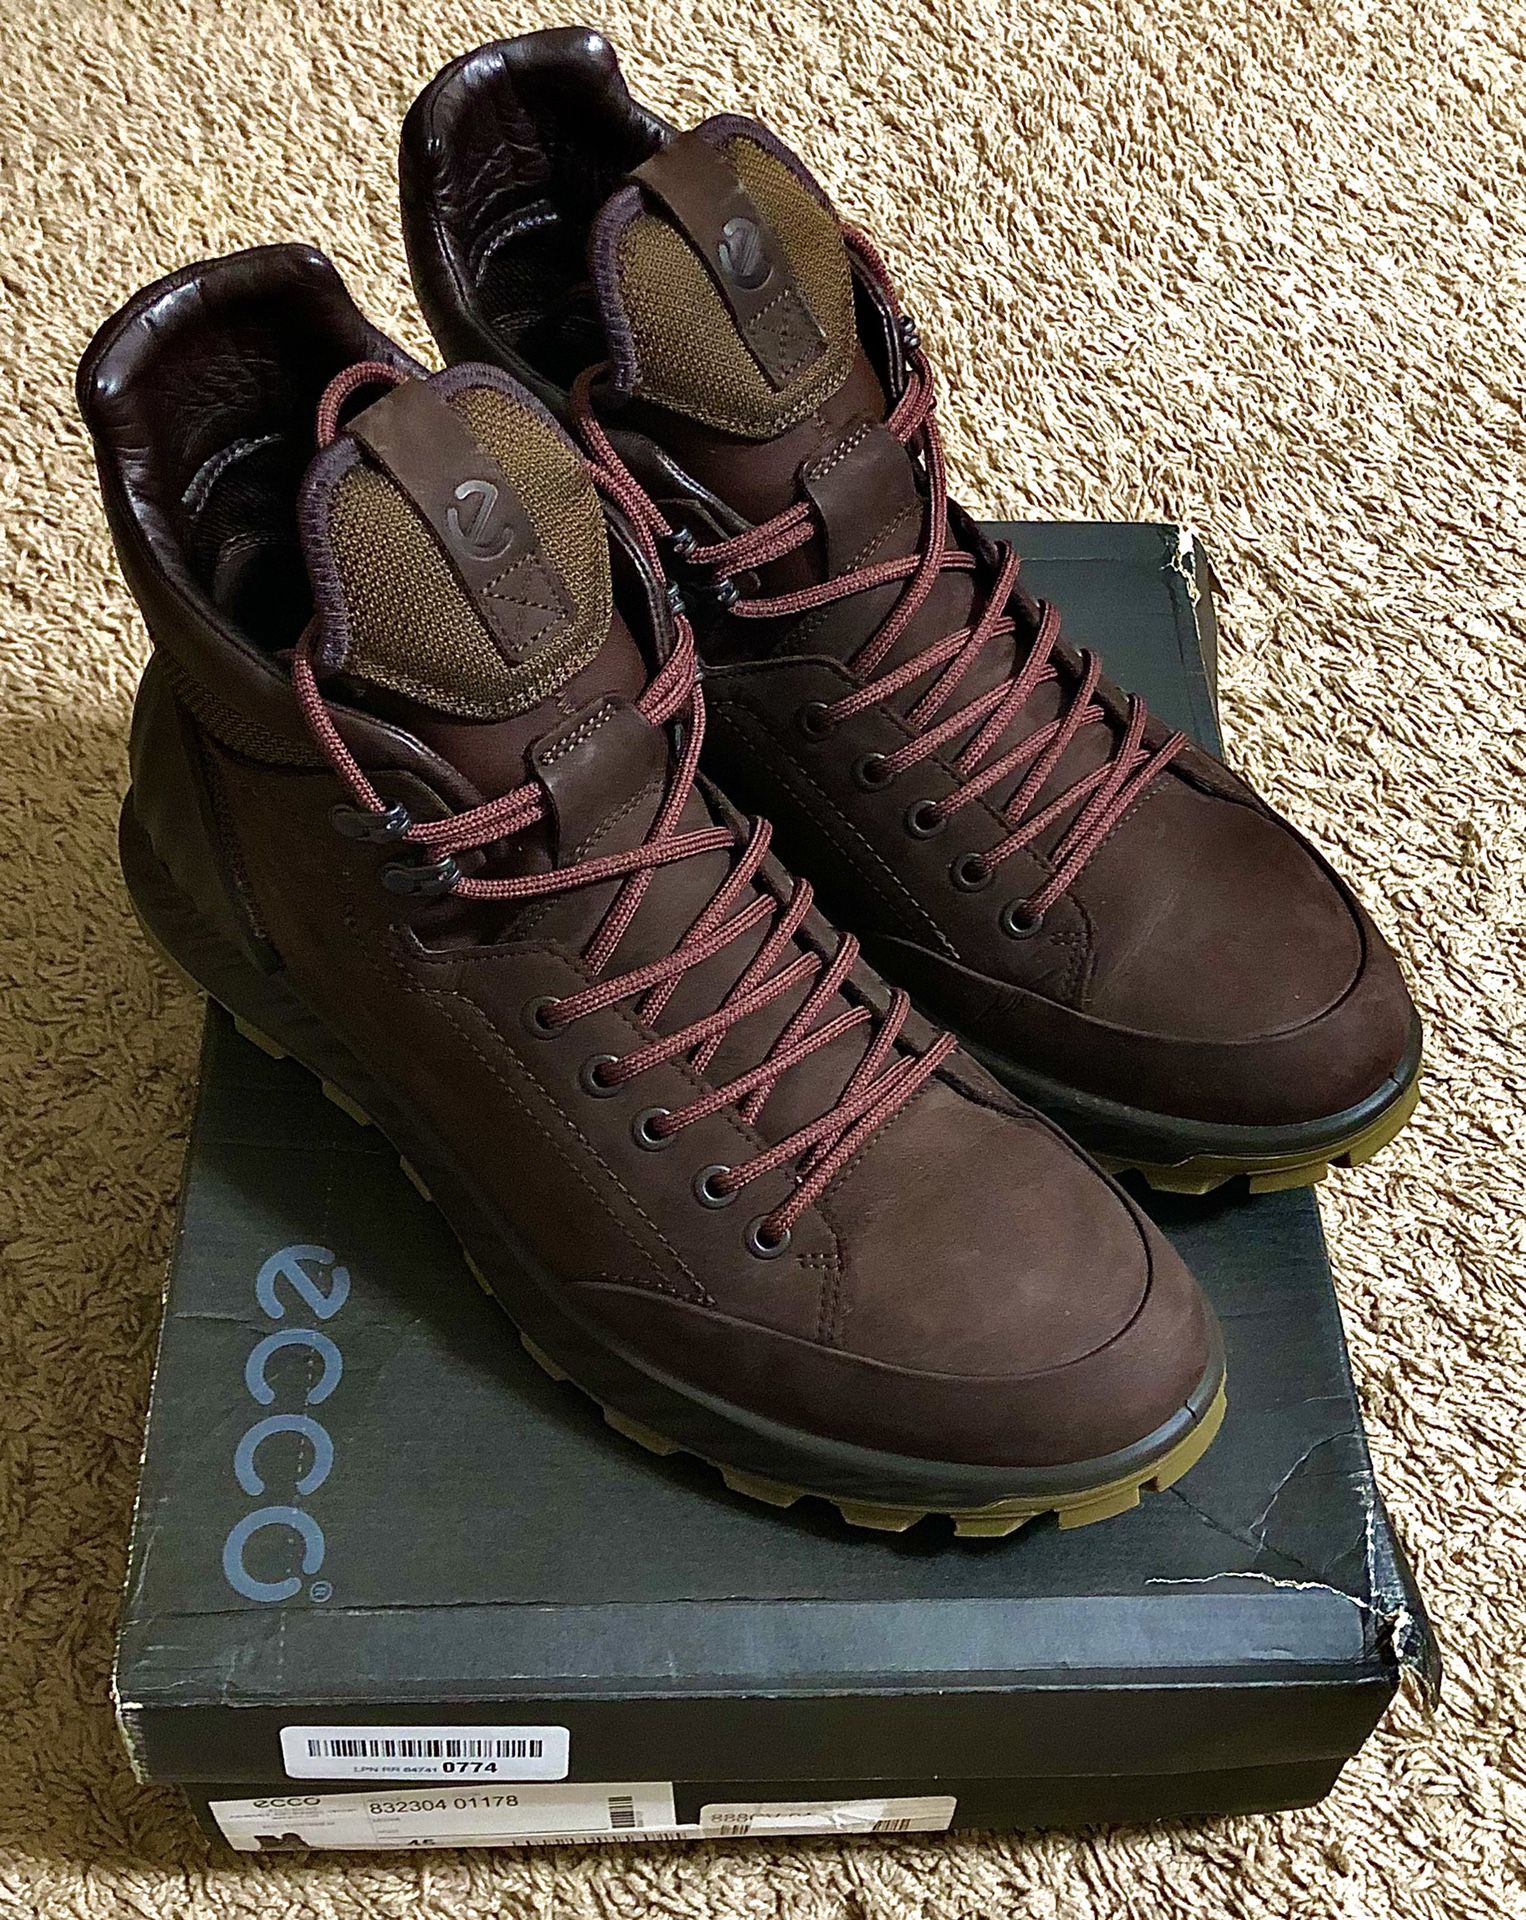 ECCO Men's Exostrike Hydromax boots 11 size